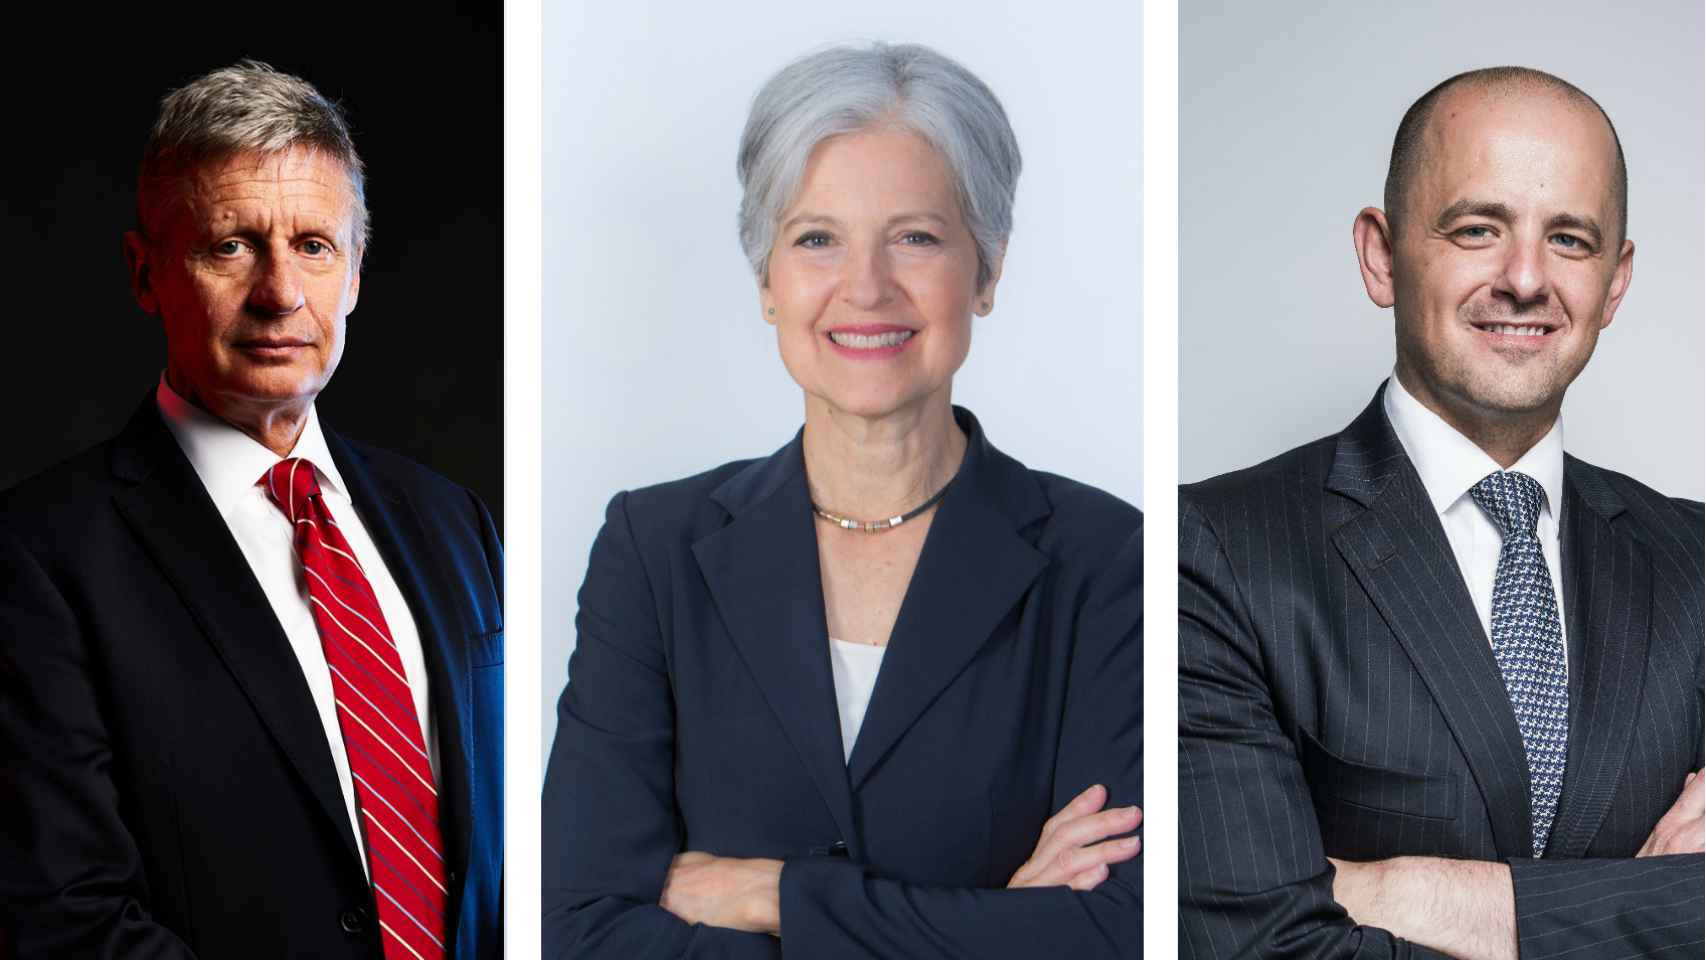 Los aspirantes alternativos Johnson, Stein y McCullin.